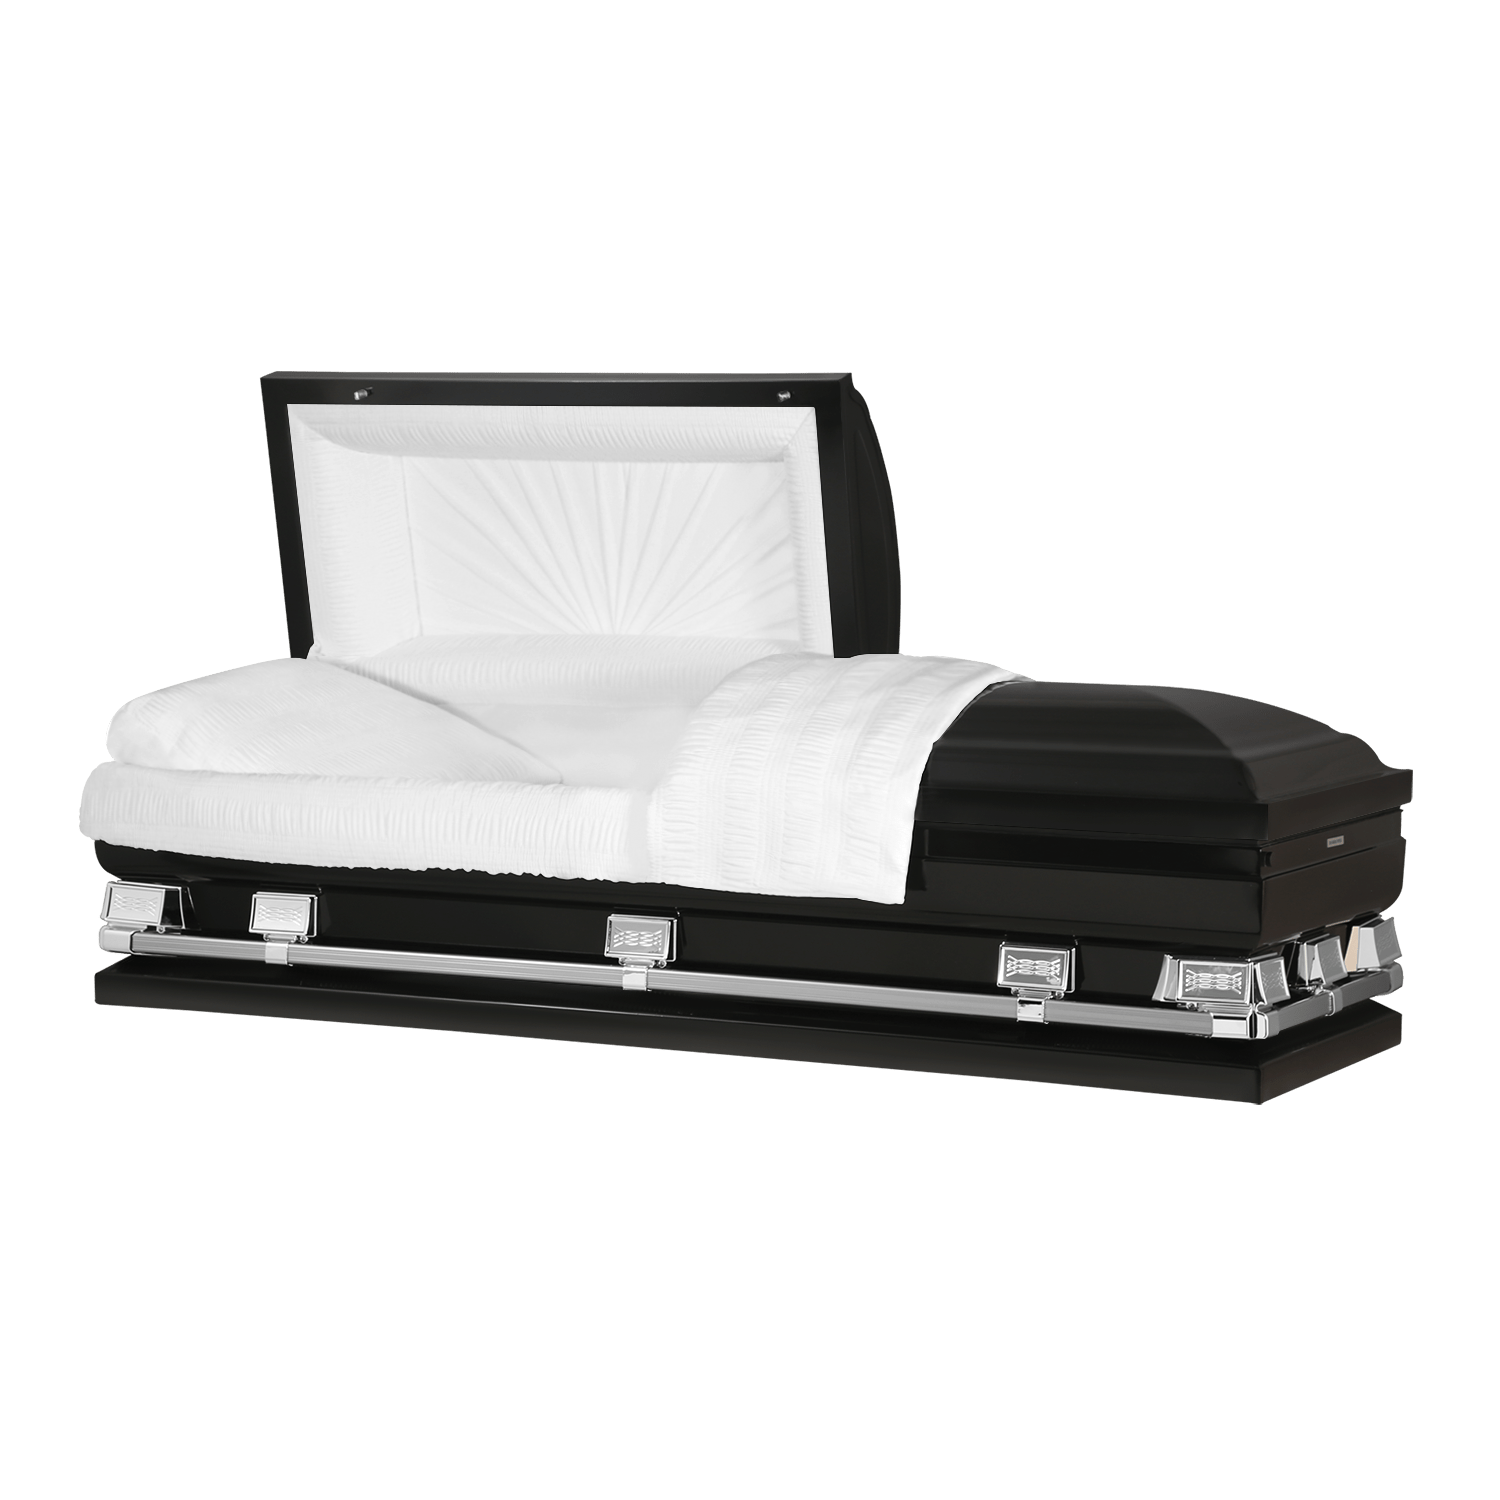 Ik heb het erkend agitatie De kamer schoonmaken Black Metal Oversize Casket - Buy Oversize Coffin - Titan Atlas – Titan  Casket